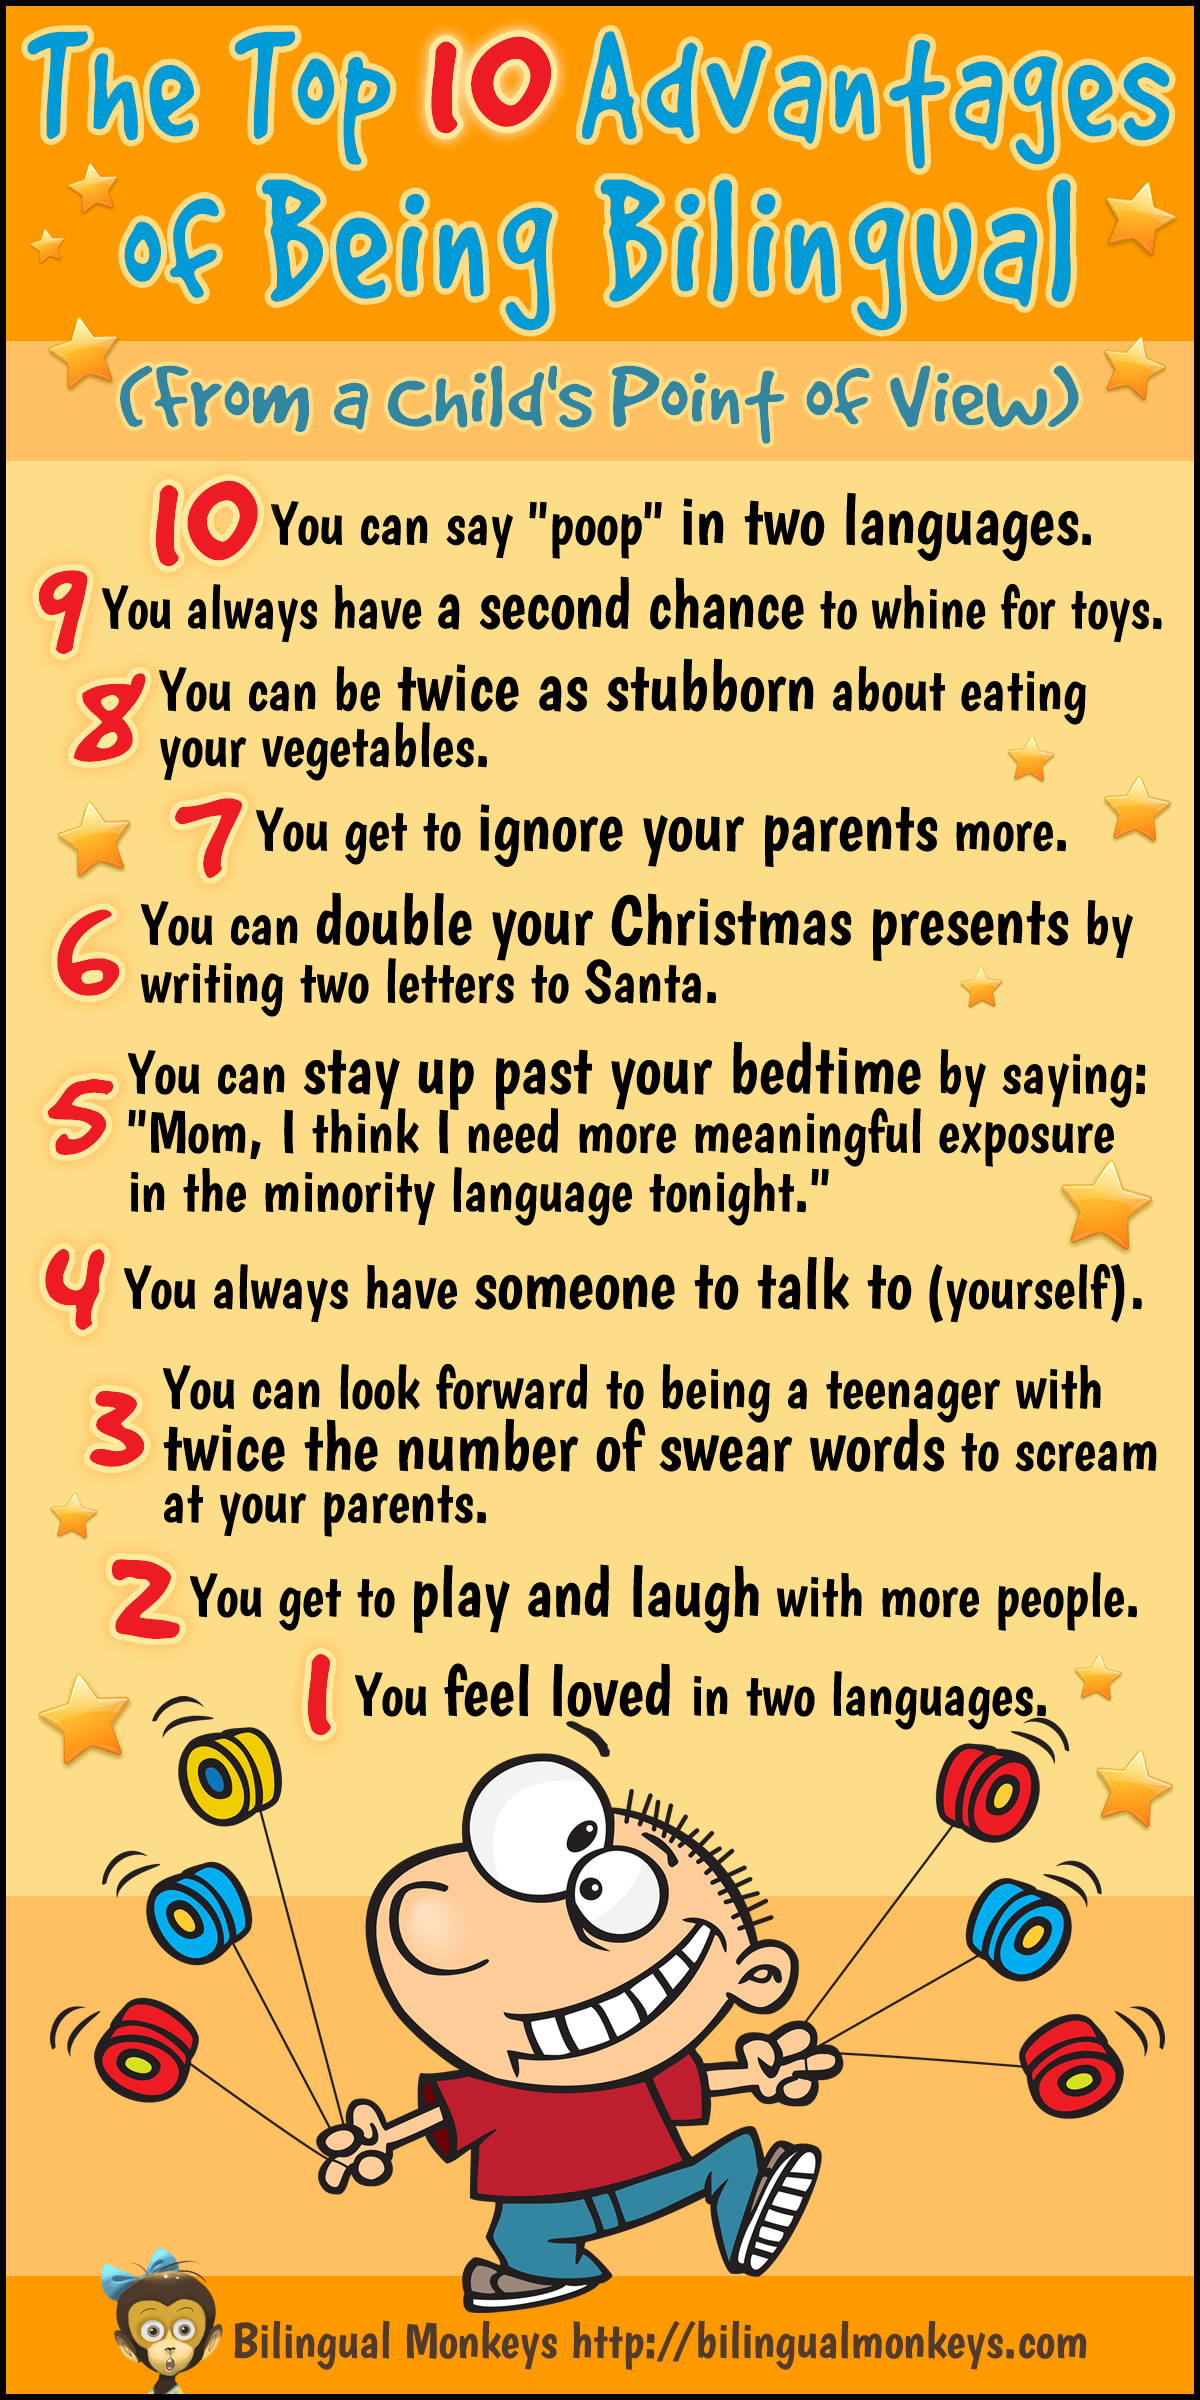  Evidenziare i vantaggi dell'essere bilingue